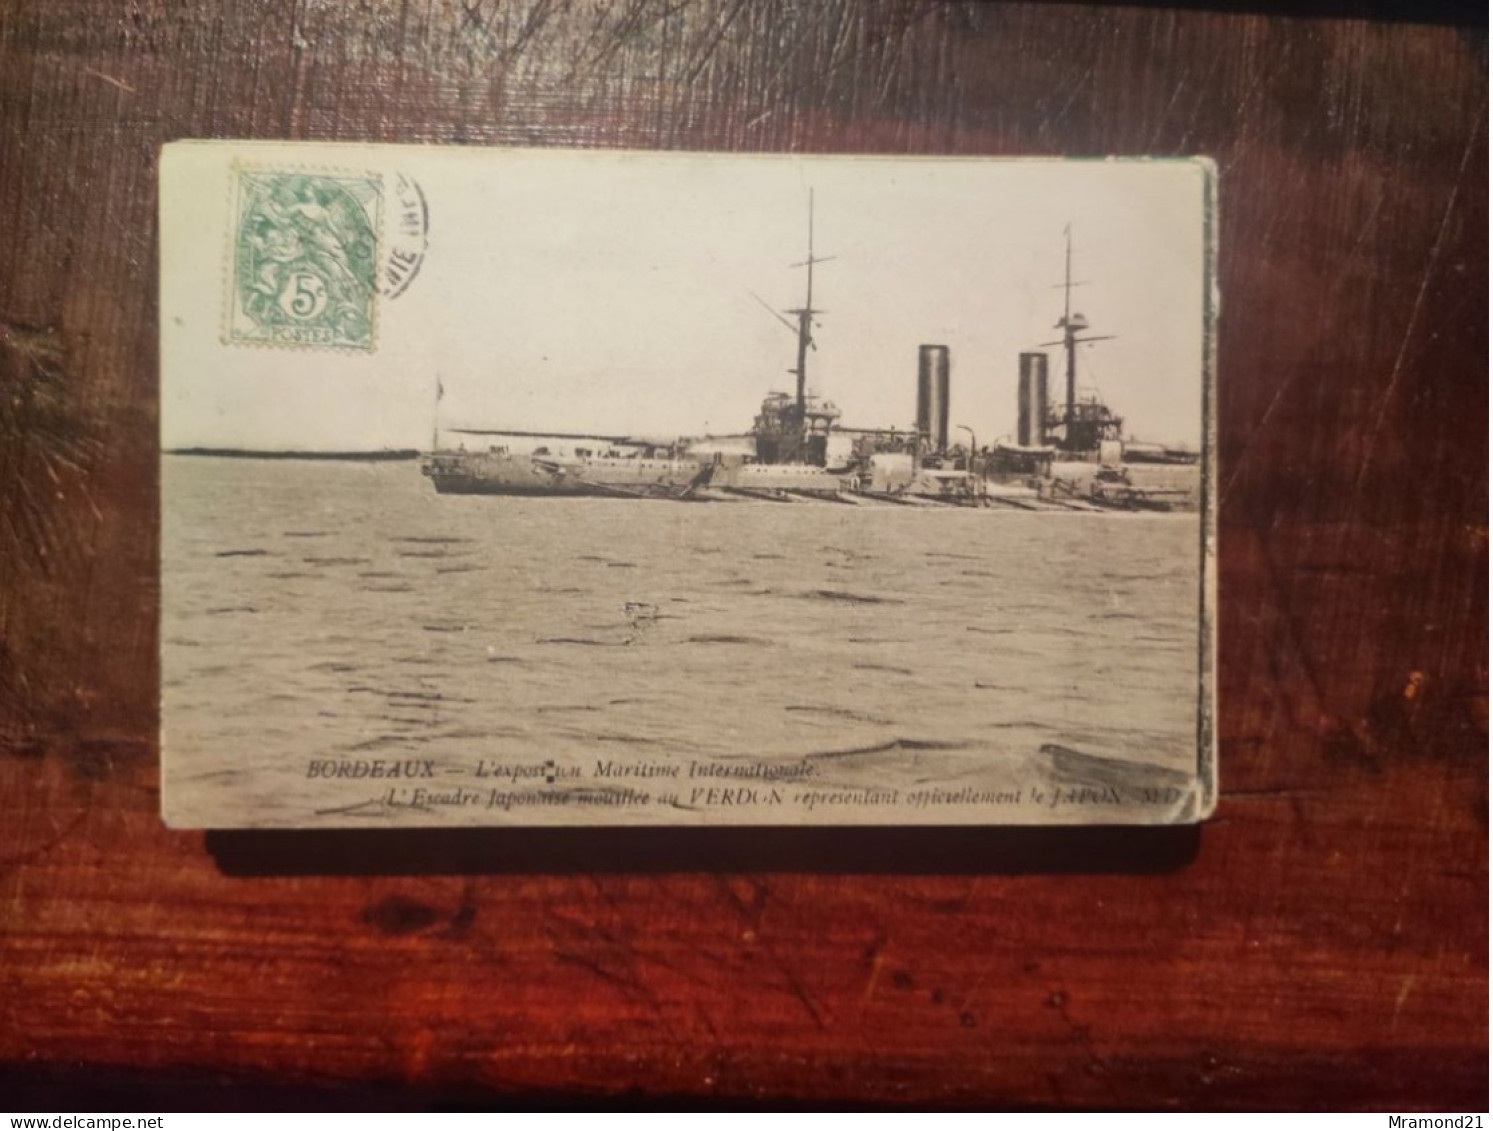 Lot de 15 cartes postales anciennes de divers horizons